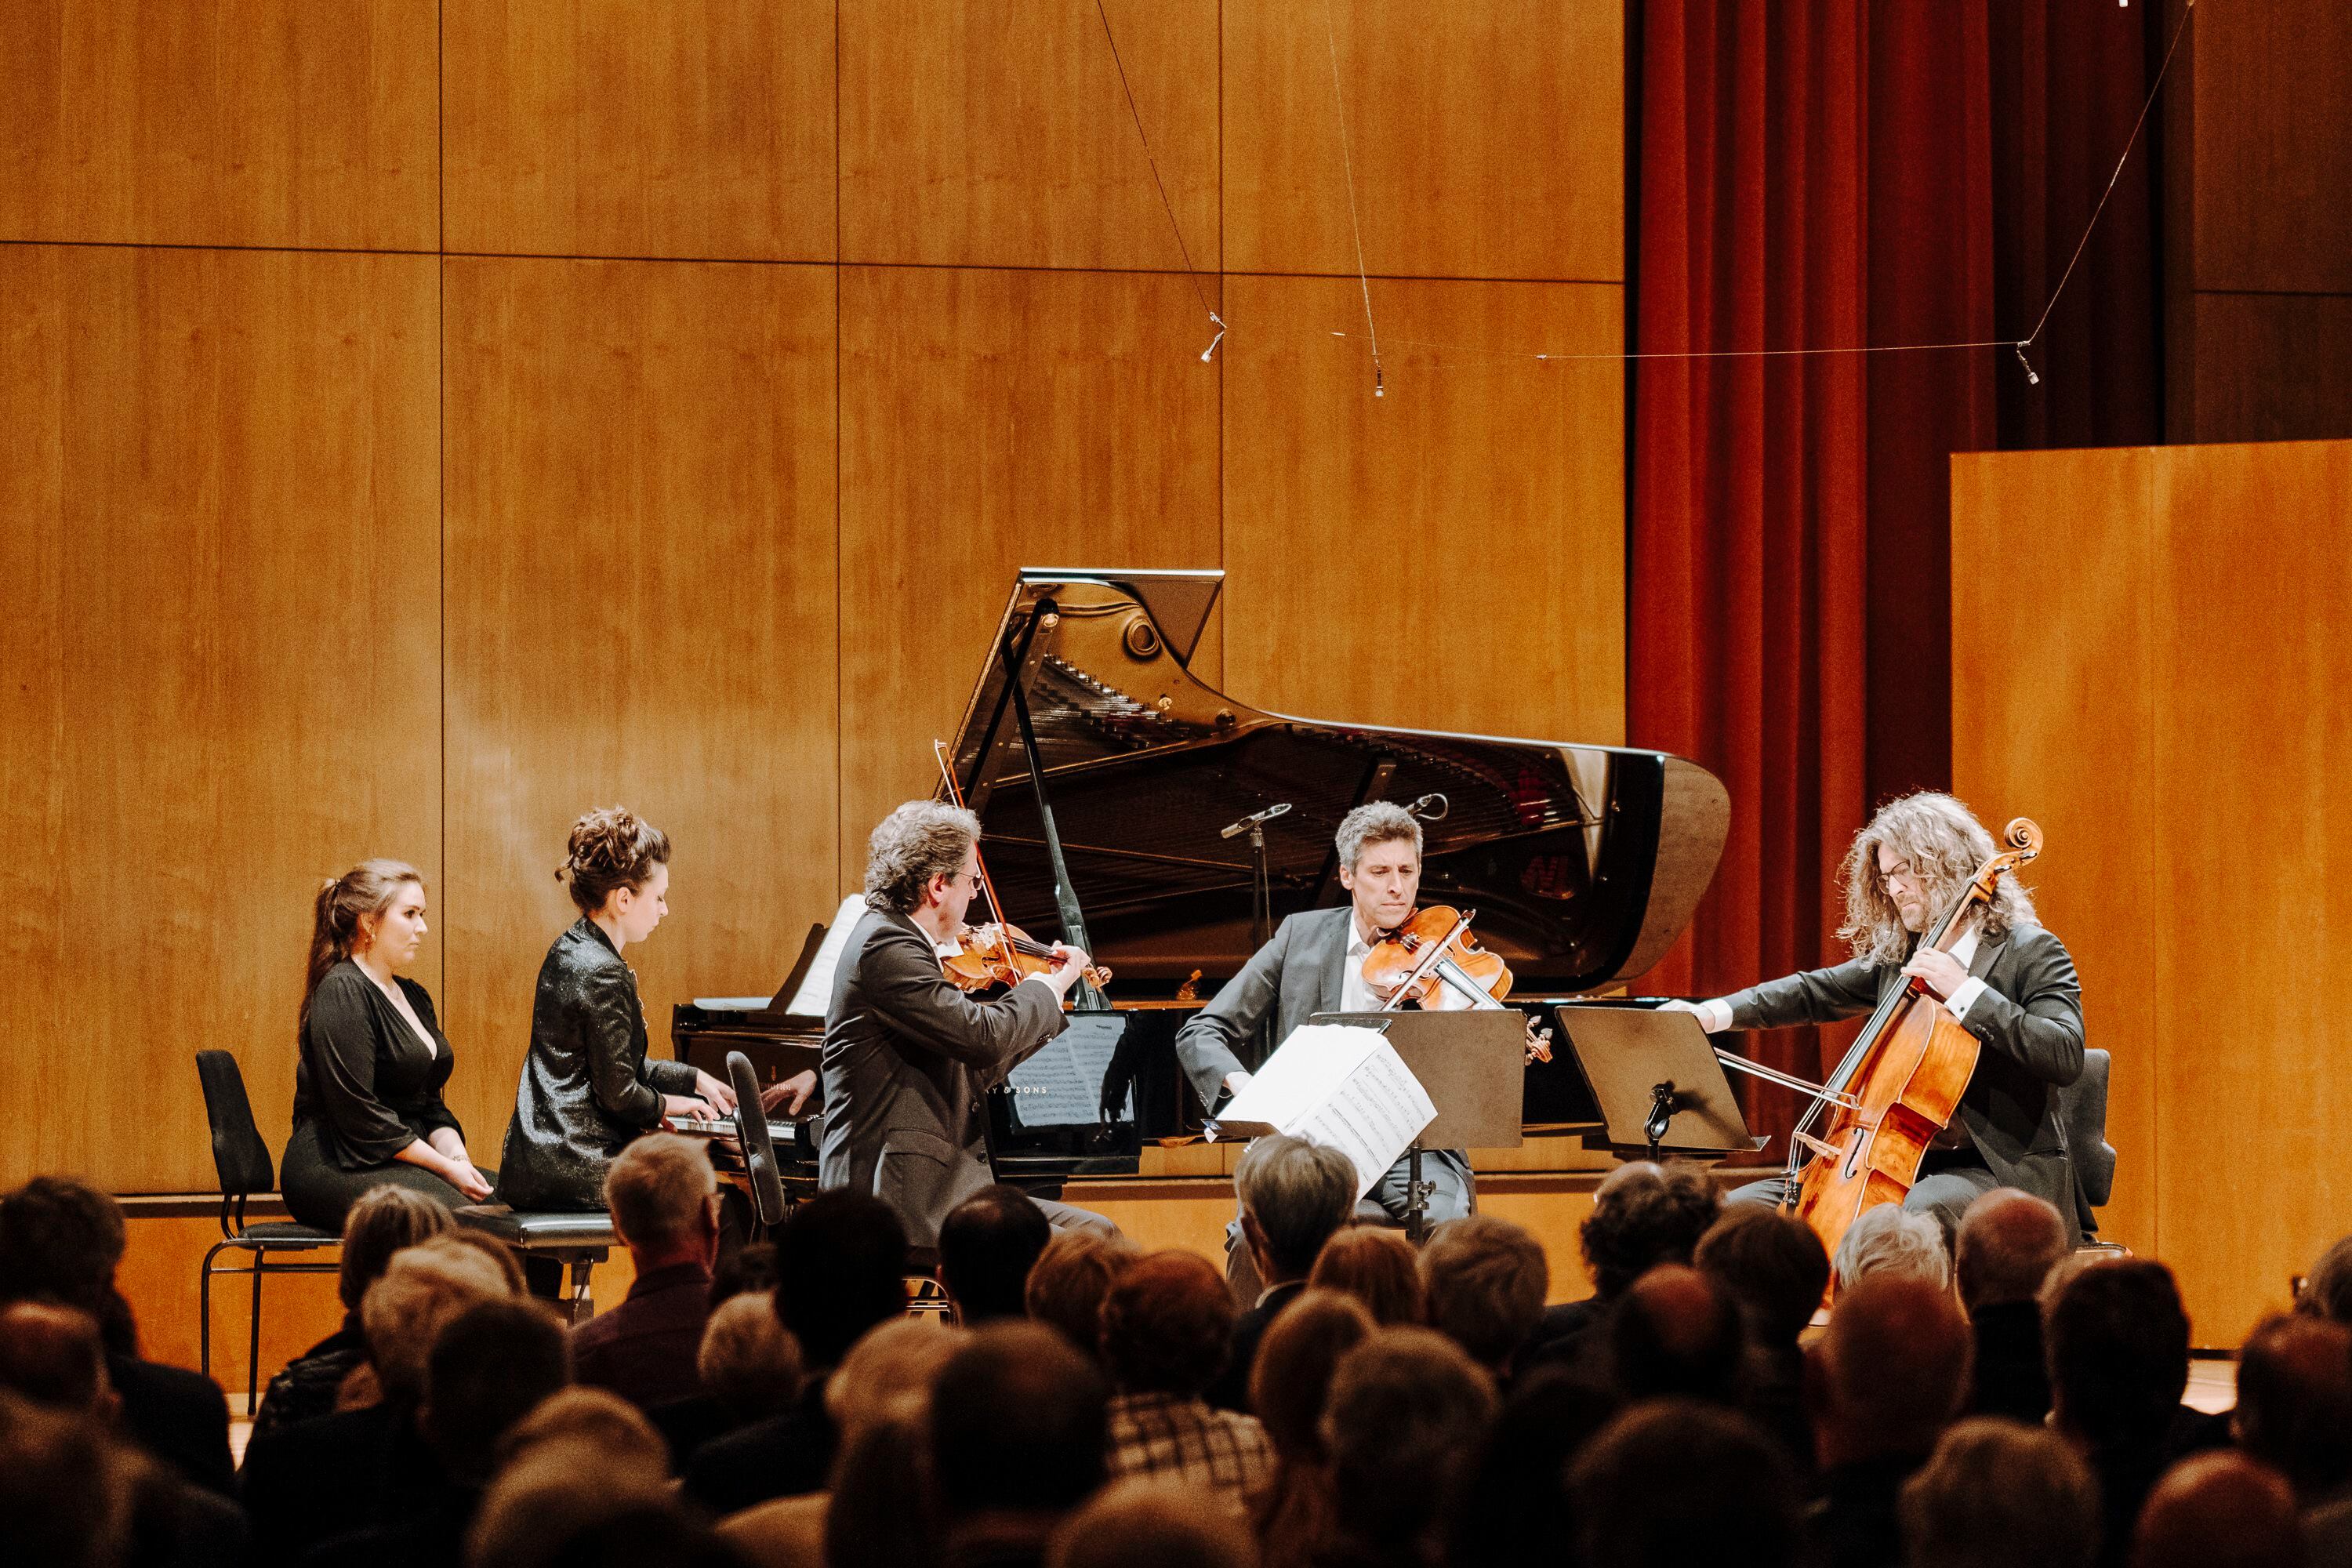 La pianista Yulianna Avdeeva, el violinista Frank-Michael Erben, el violista Anton Jivaev y el violonchelista Valentino Worlitzsch, el pasado sábado en la Sala Mendelssohn de la Gewandhaus.